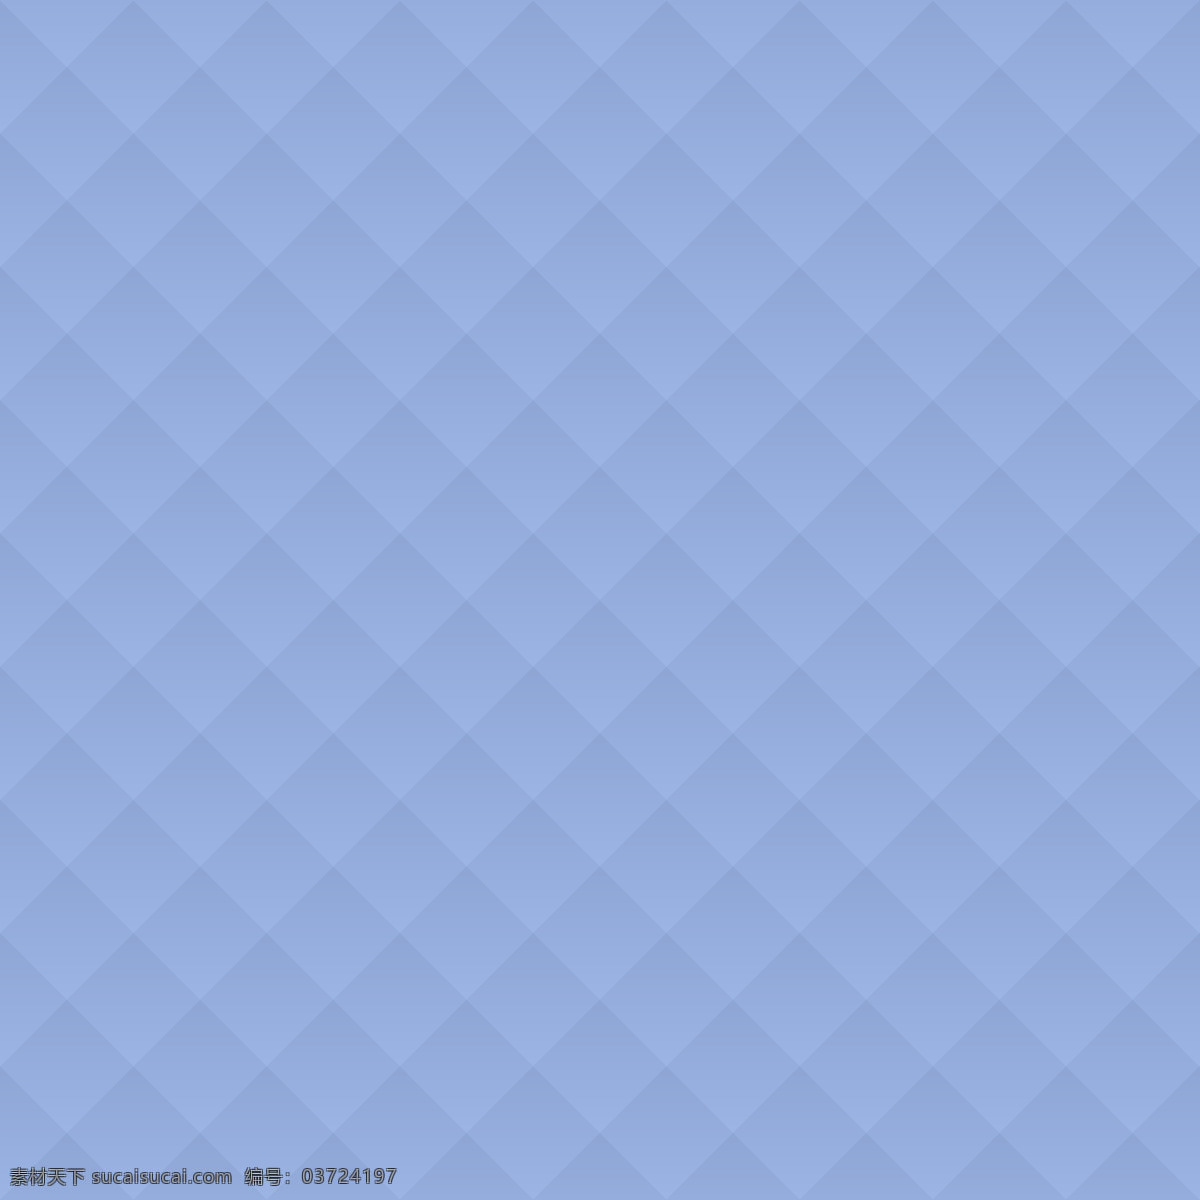 蓝色 素色 菱形 格子 简约 背景 底 图 底图 底纹边框 背景底纹